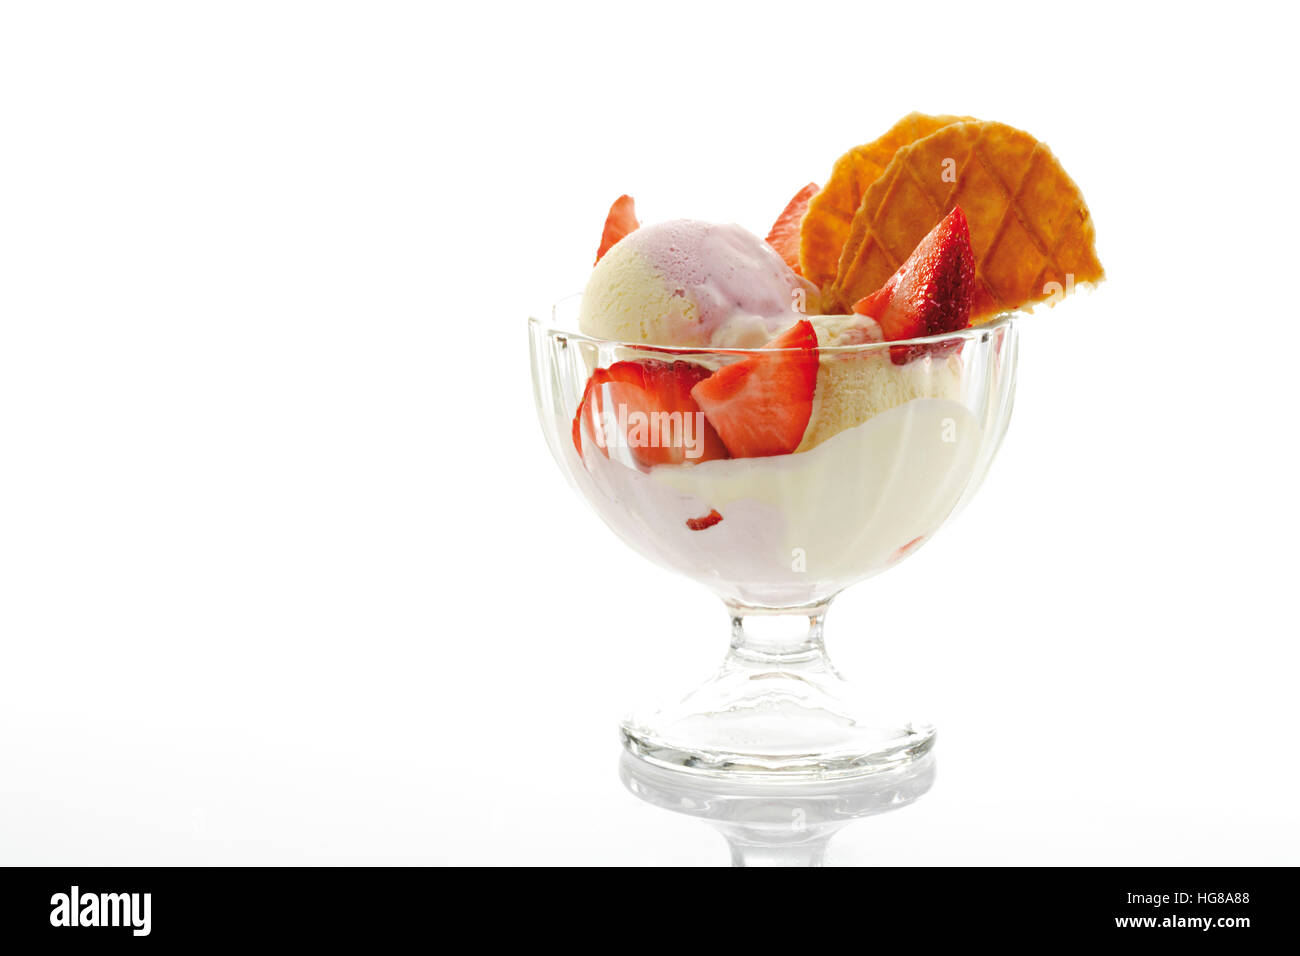 Glace vanille, fraises et crème fouettée dans un verre parfait Banque D'Images